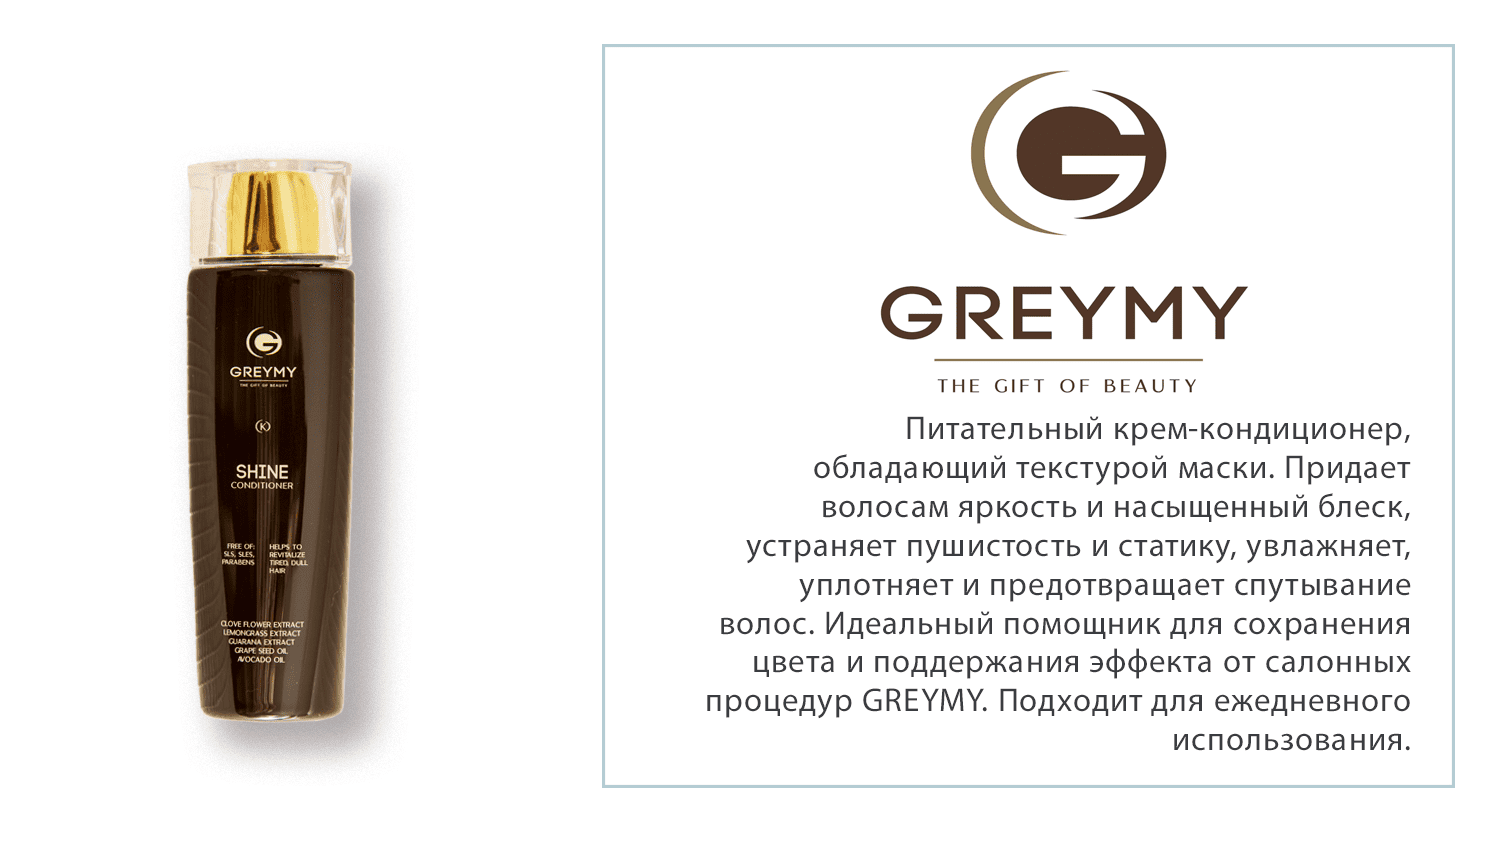 Питательный крем-кондиционер GREYMY. Подходит для ежедневного использования.